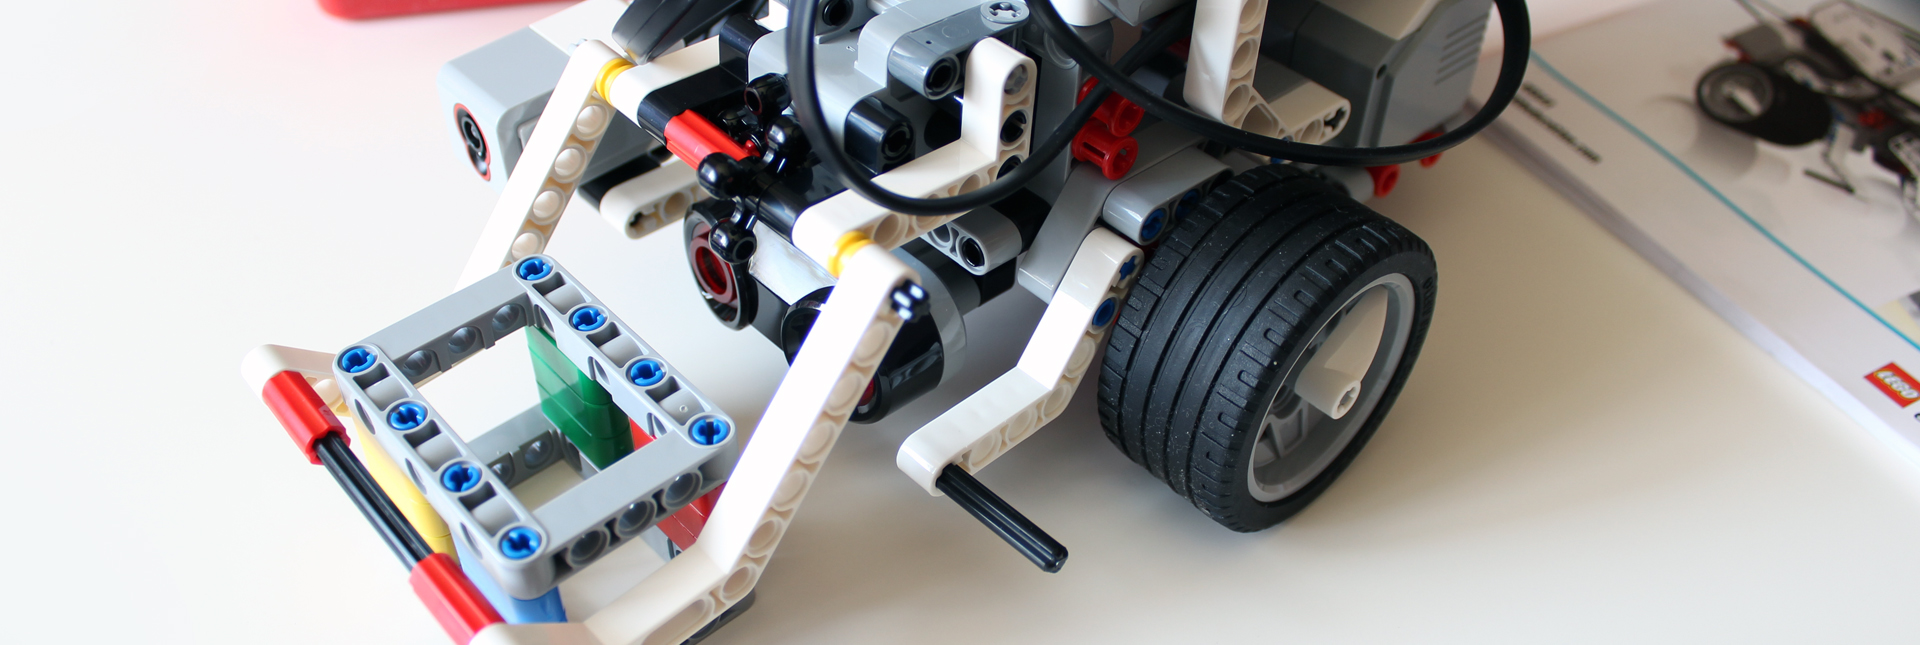 Budujemy i programujemy prawdziwe roboty LEGO